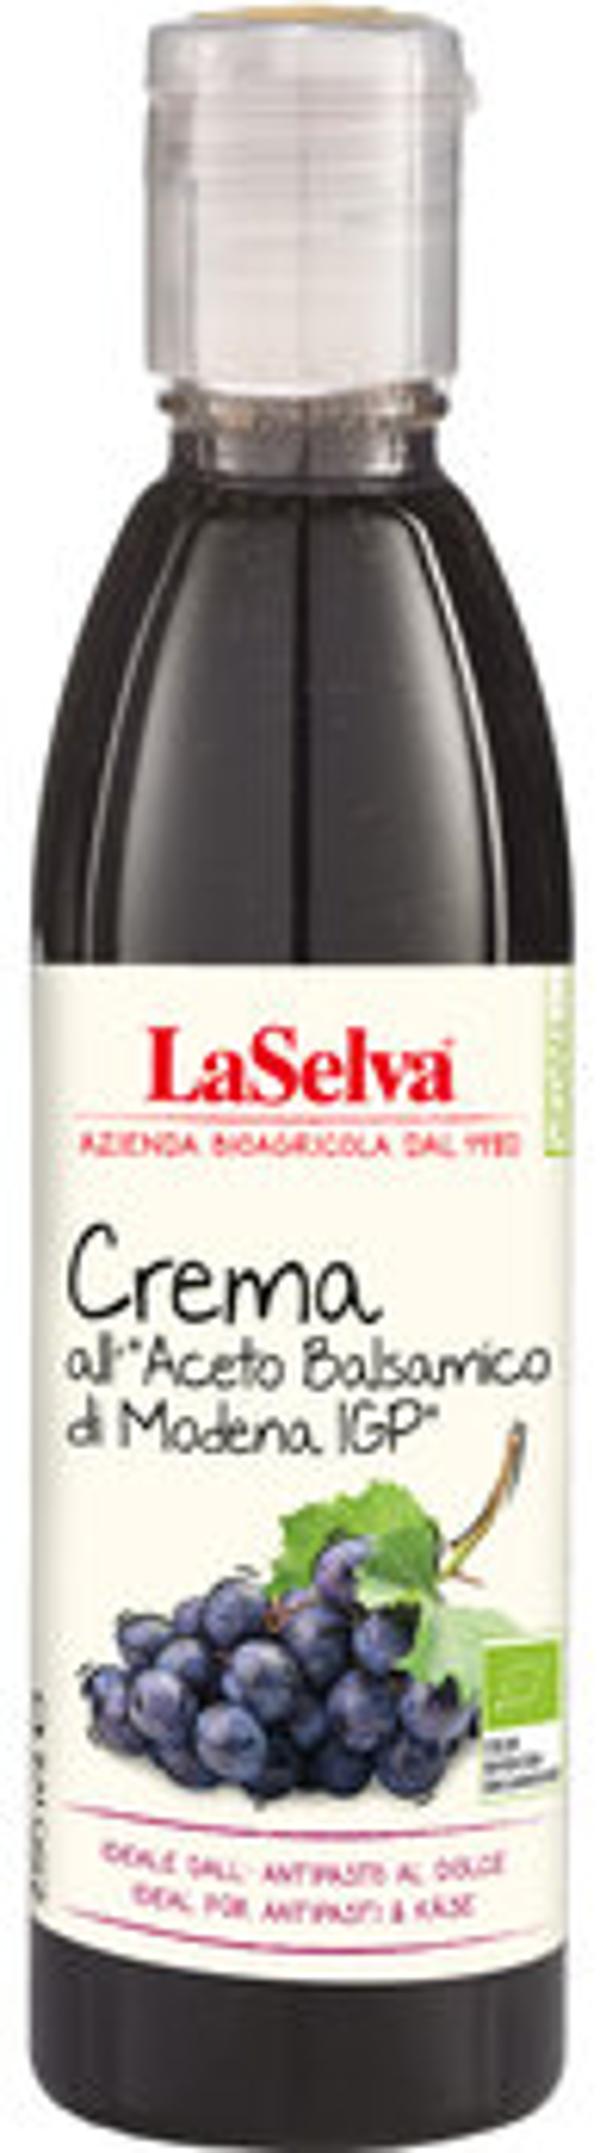 Produktfoto zu Crema di Balsamico, 250 ml